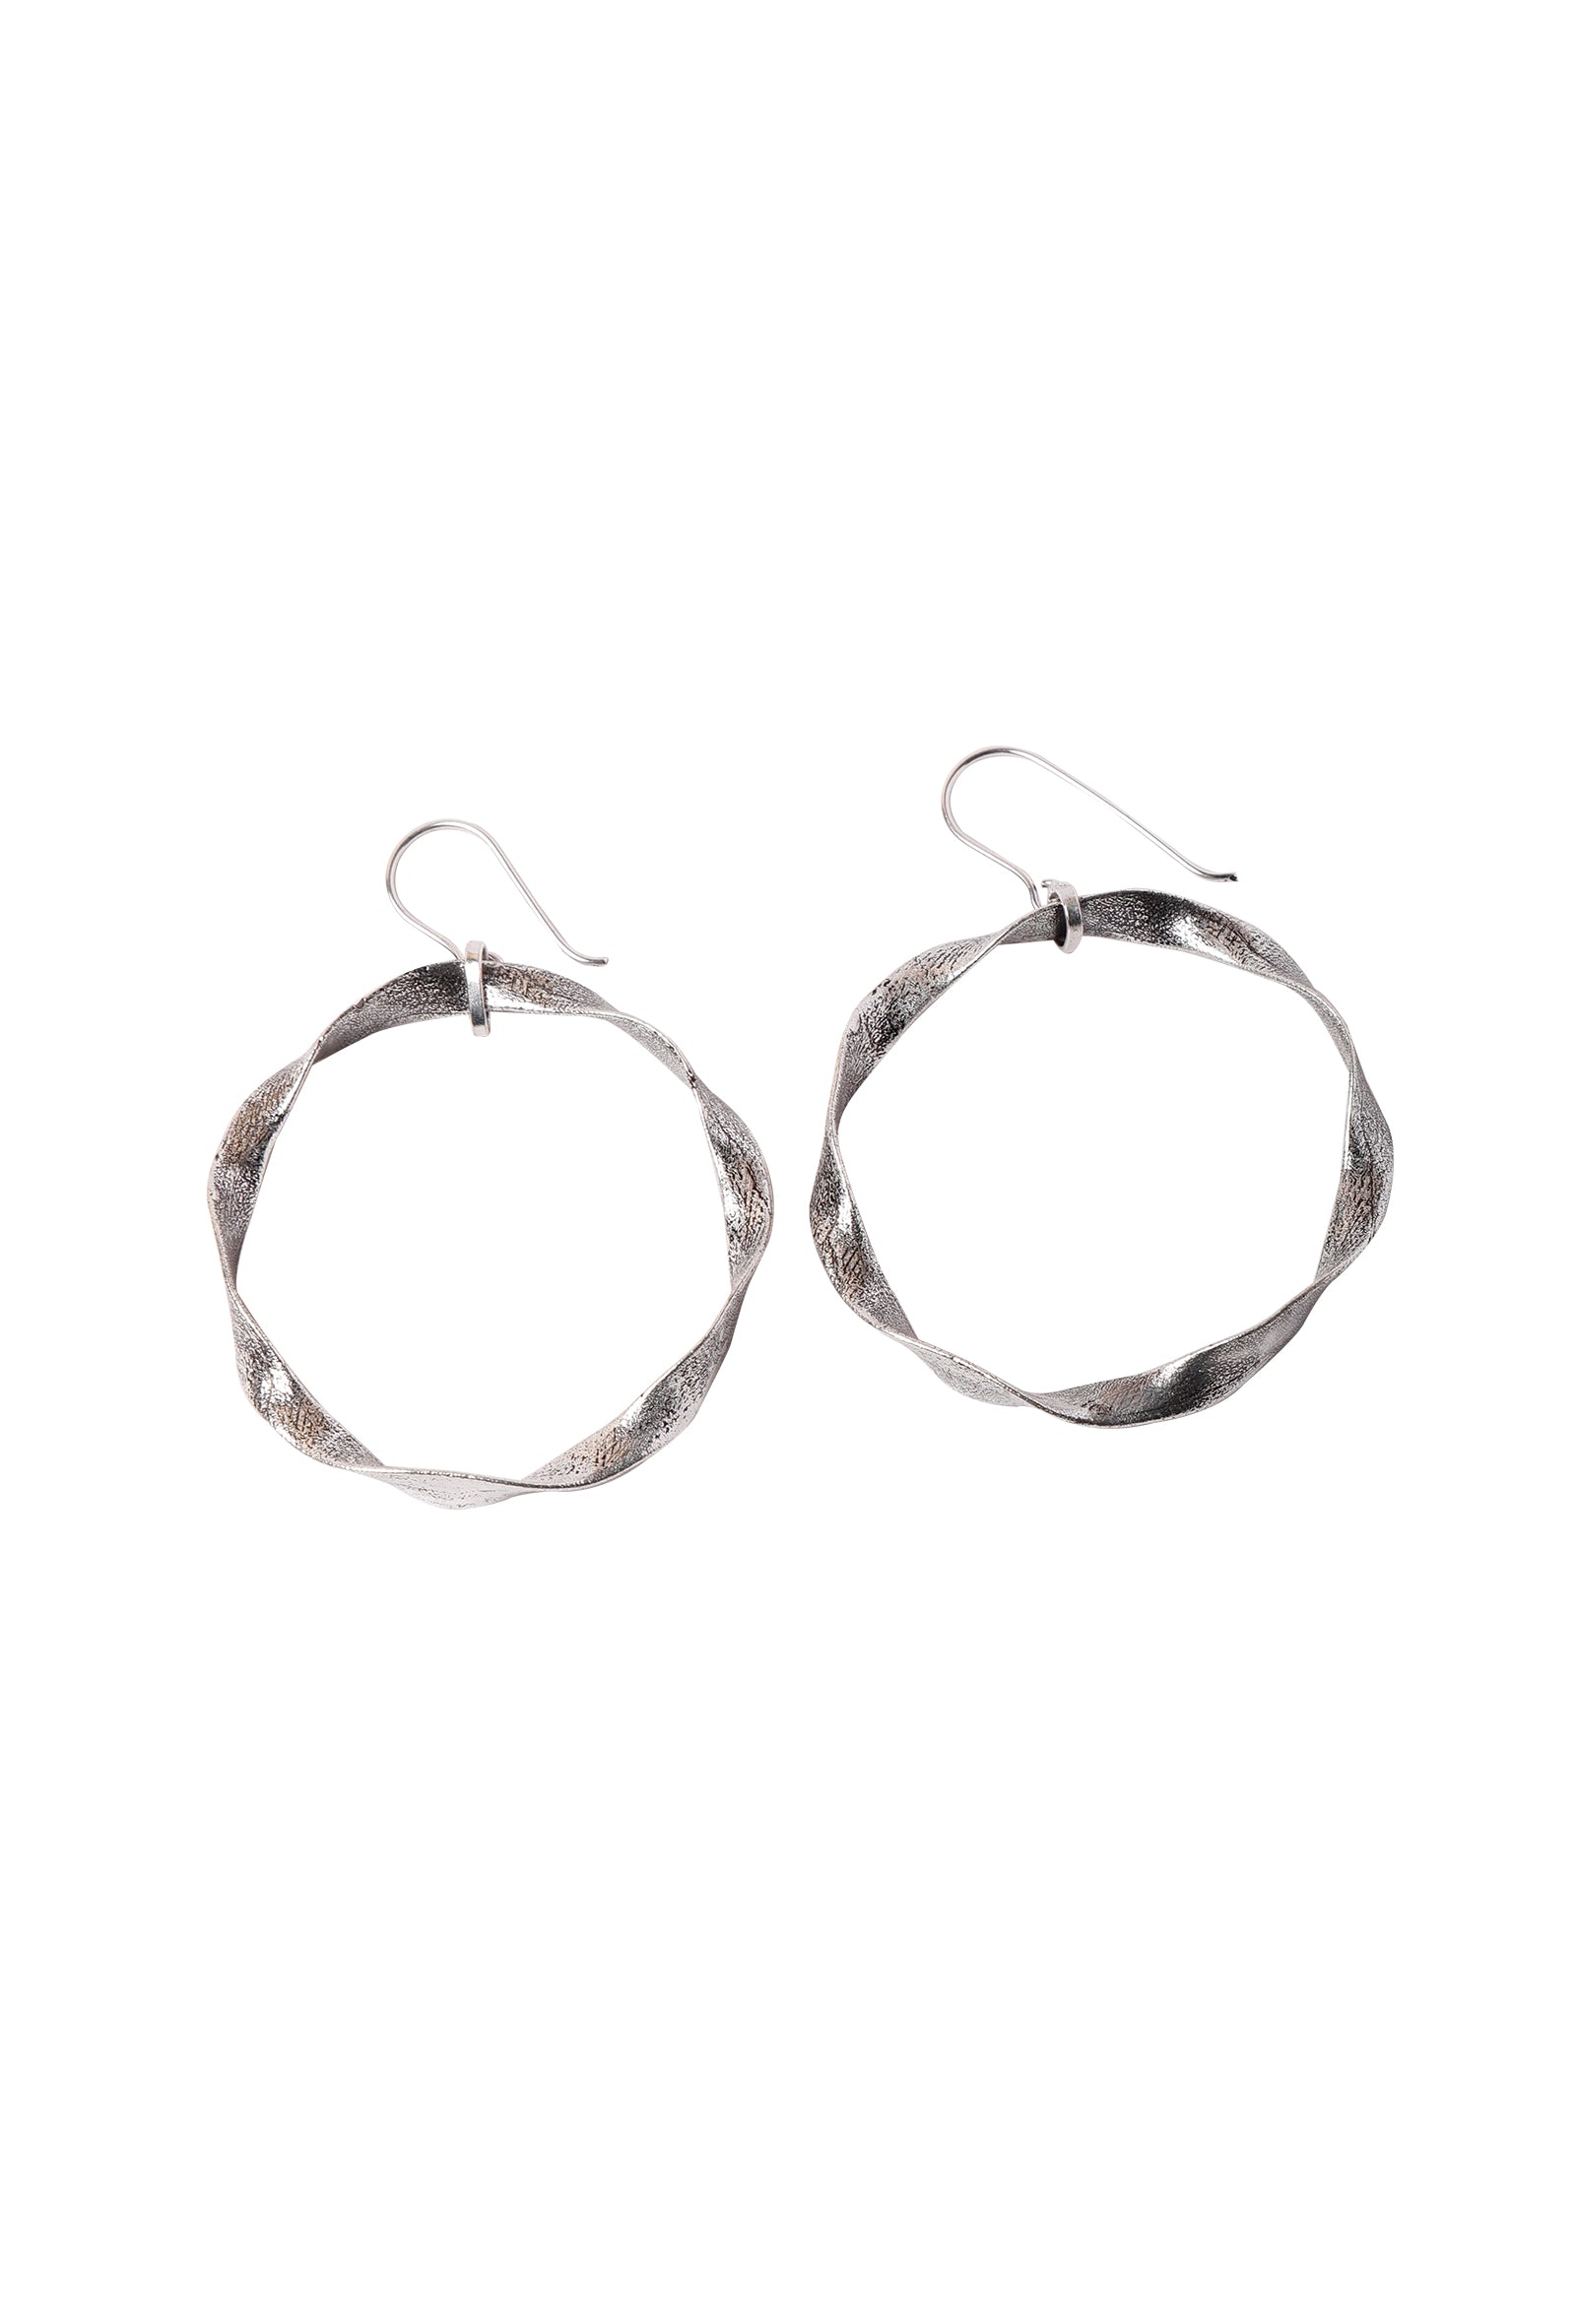 Silver plated Twisted Hoop Earrings